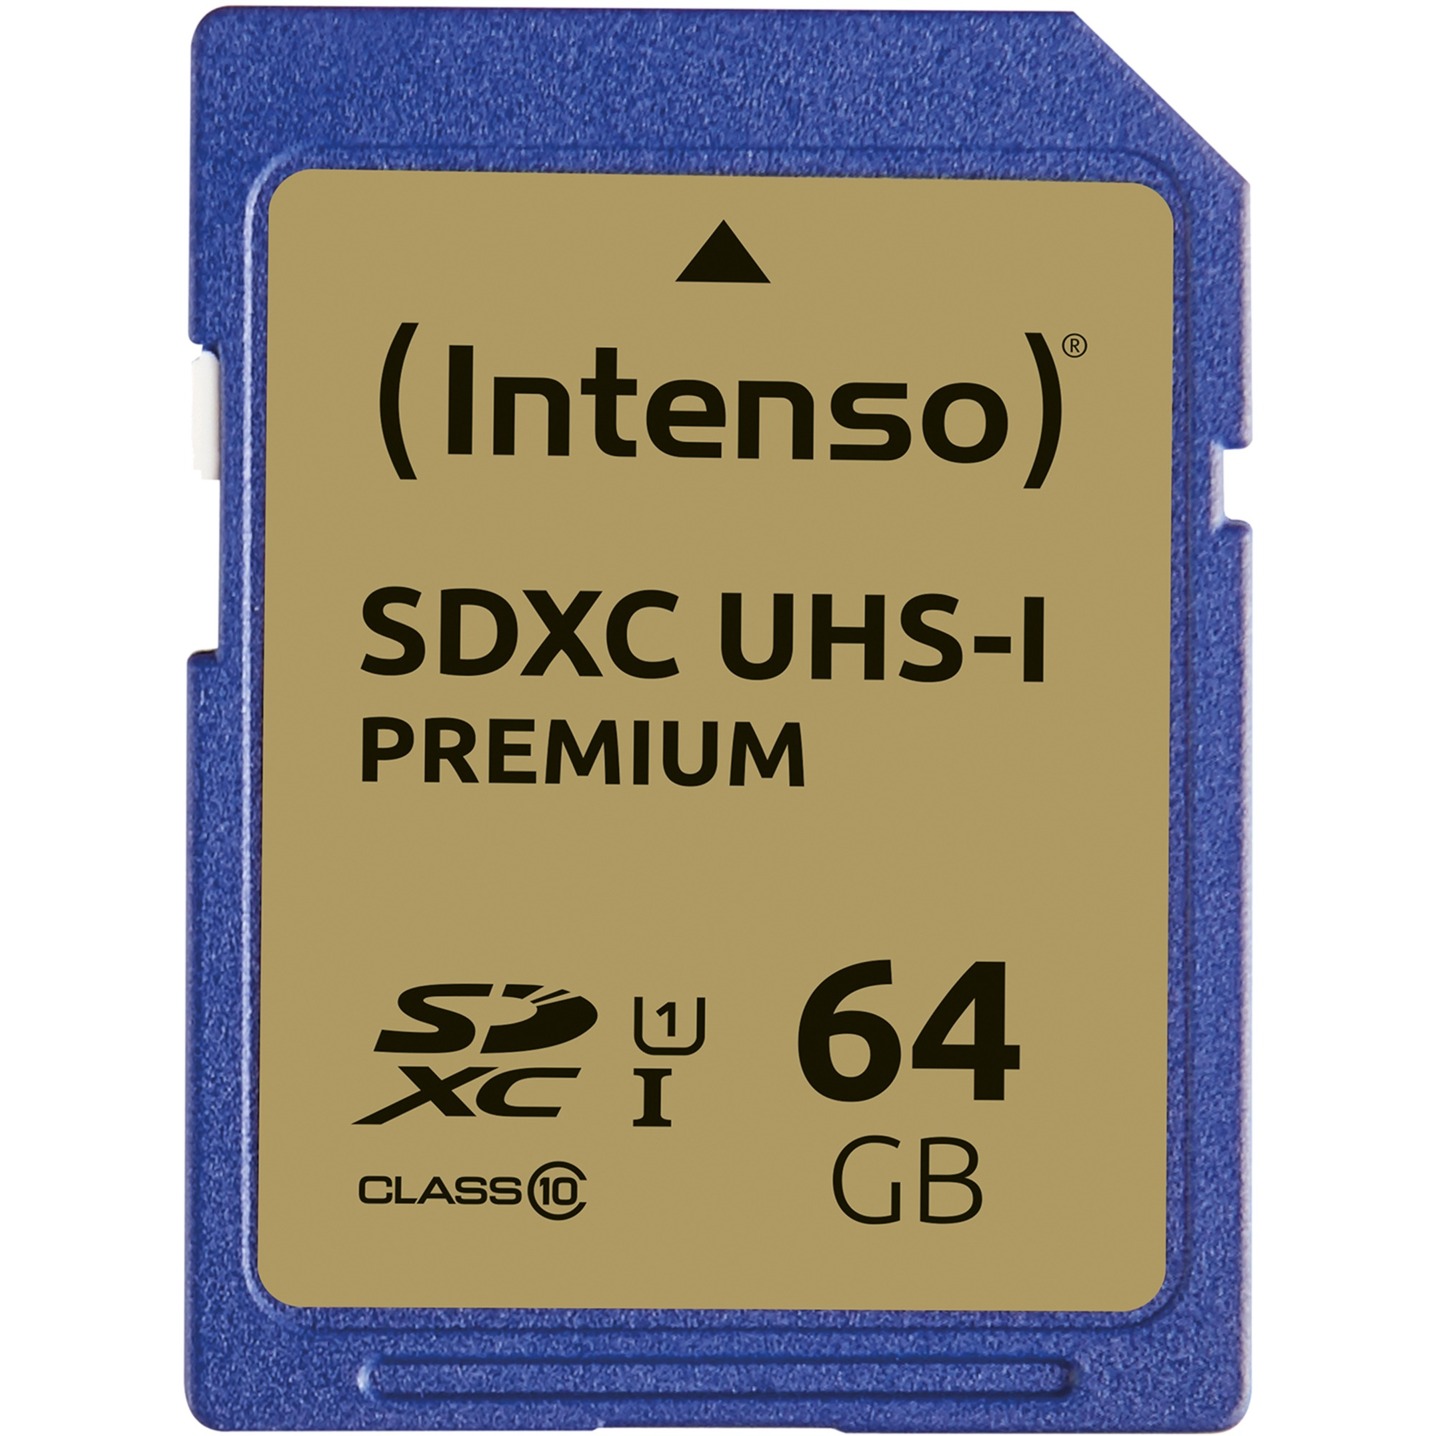 SDHC UHS-I 64 GB, Speicherkarte von Intenso